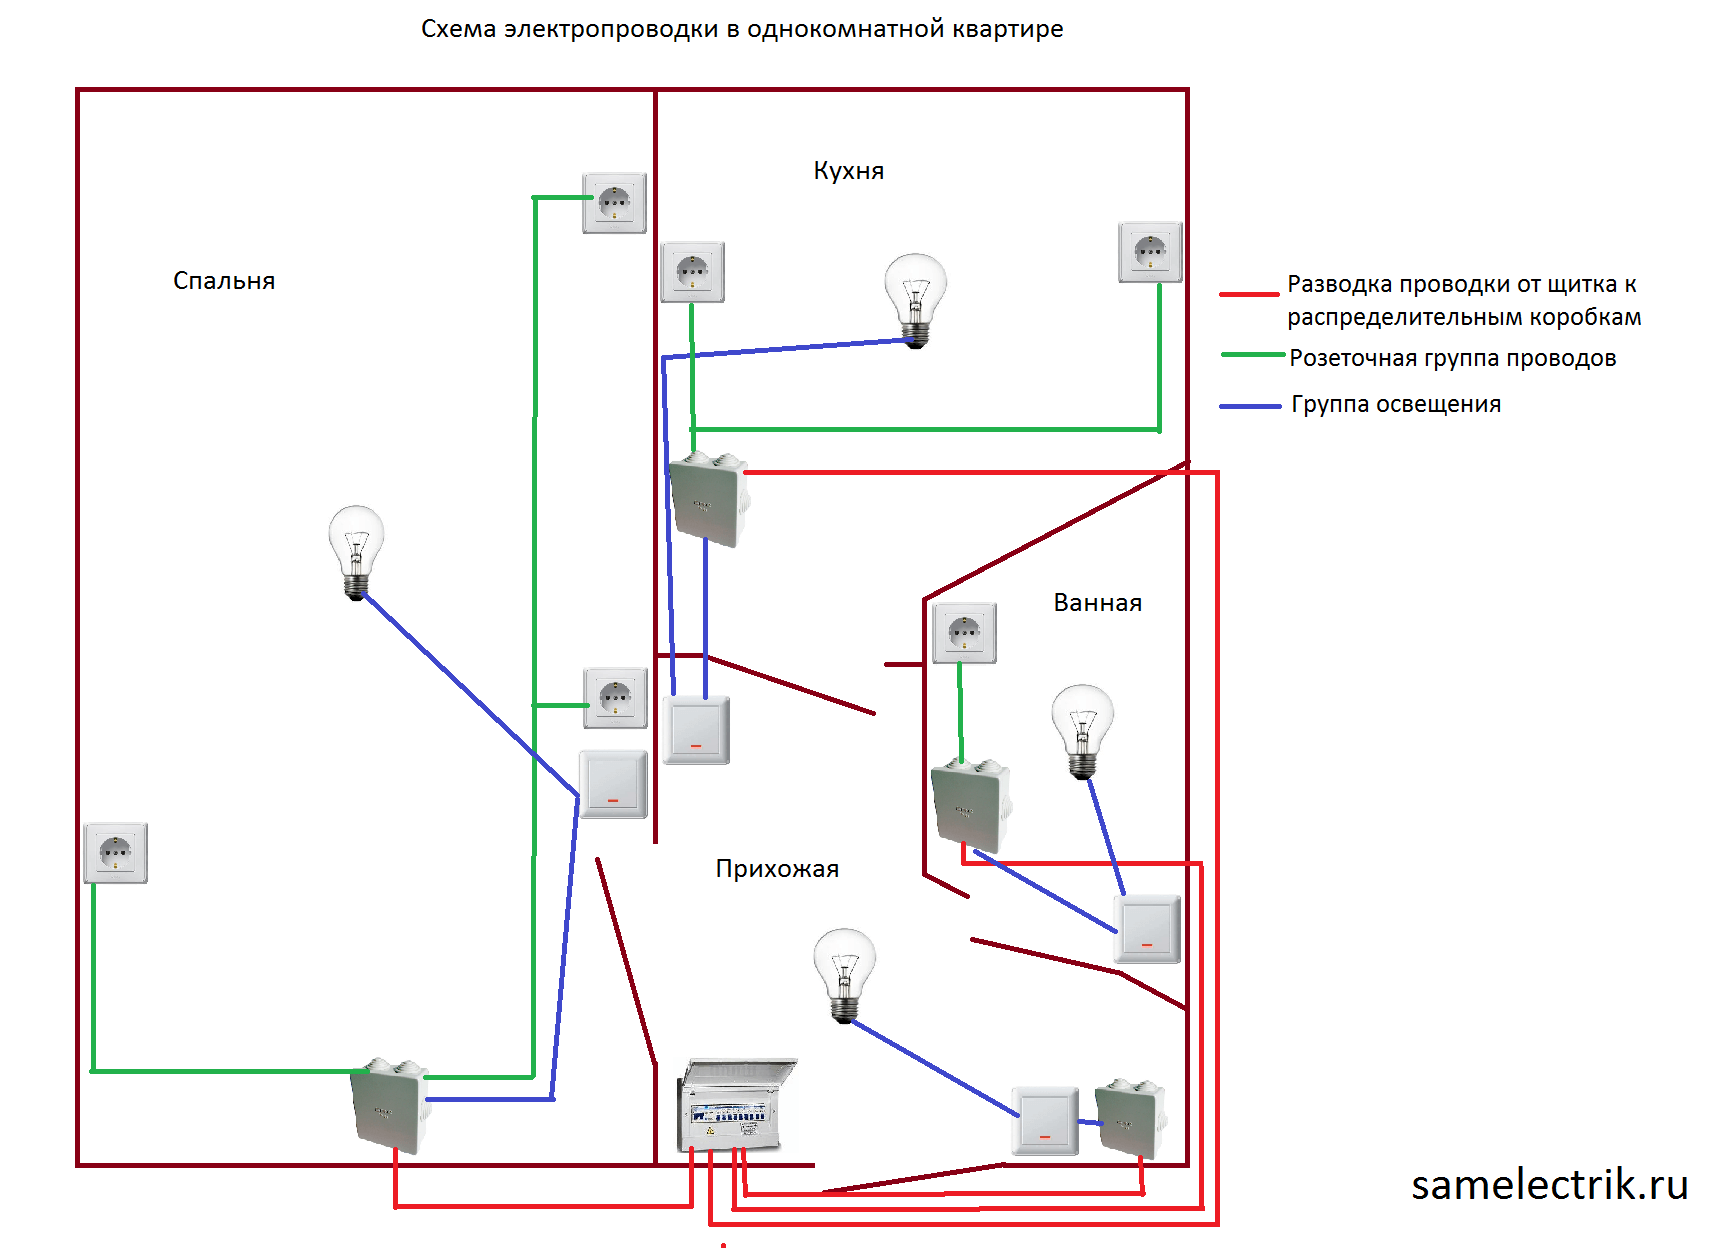 Как правильно проложить проводку в однокомнатной или многокомнатной квартире своими руками: все о процессе монтажа - все об электрике от экспертов